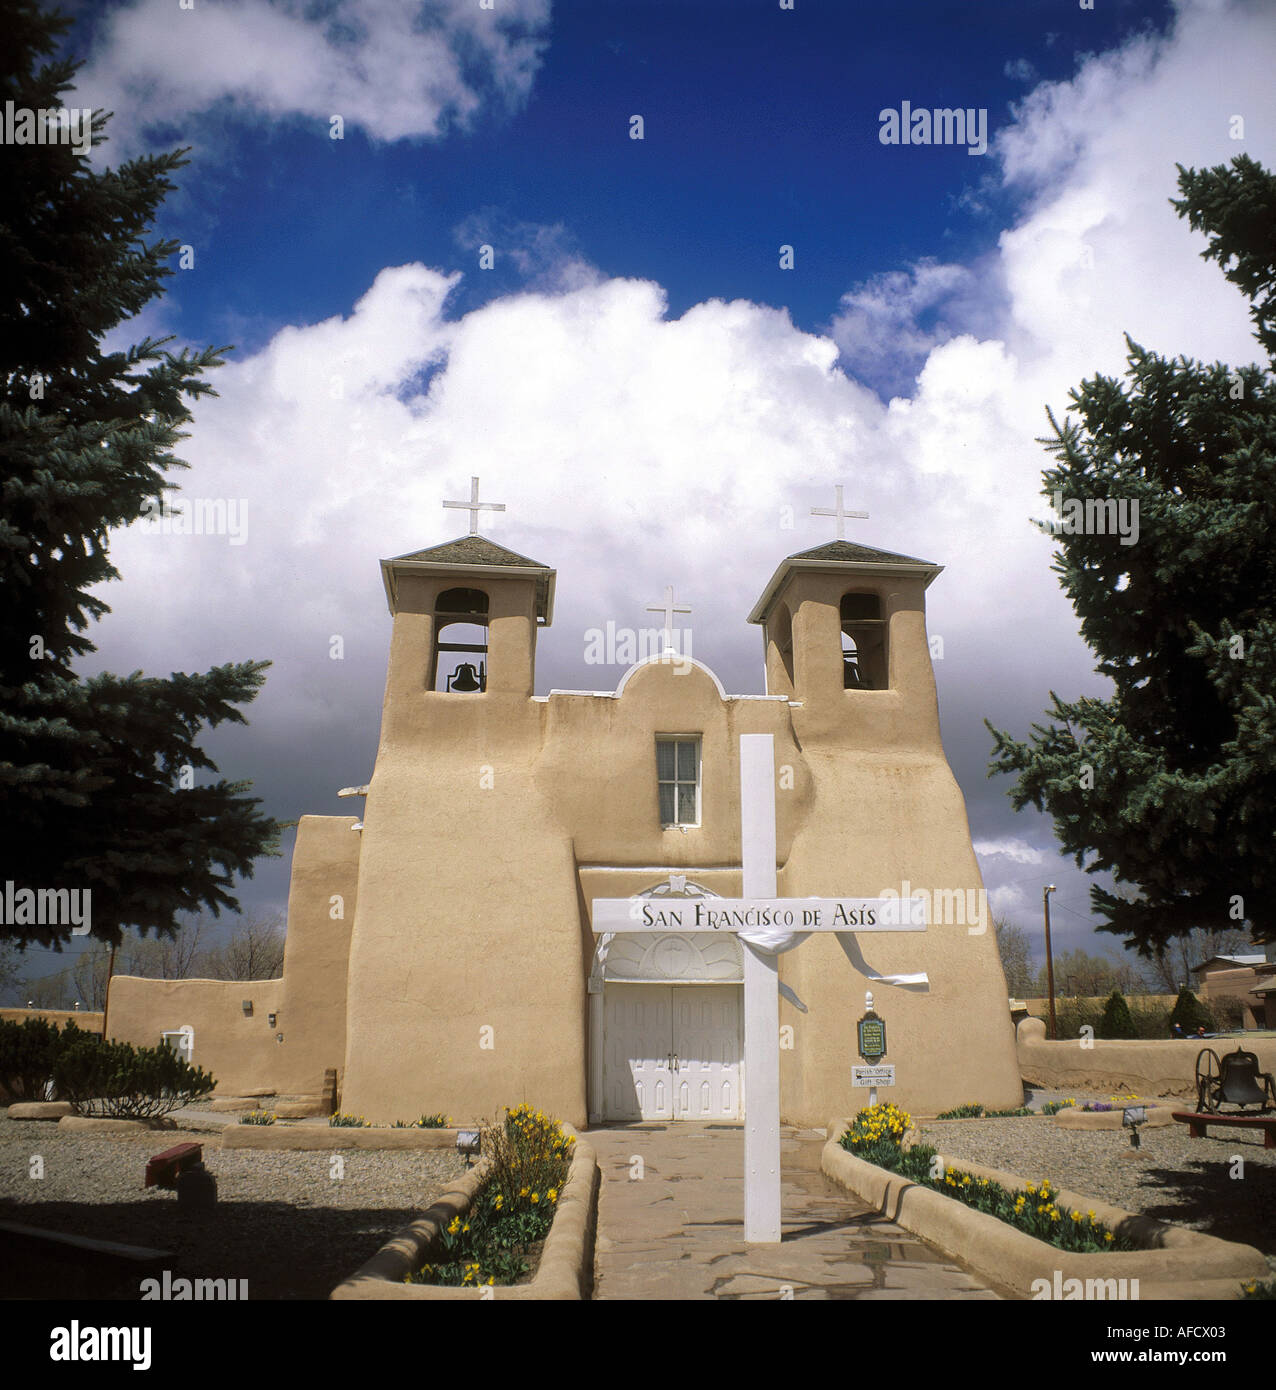 Geographie / Reisen, USA, New Mexiko, Taos, Kirchen, San Francisco de Asis, gebaut im 18. Jahrhundert n. Chr., Außenansicht, Blick von Mai Stockfoto